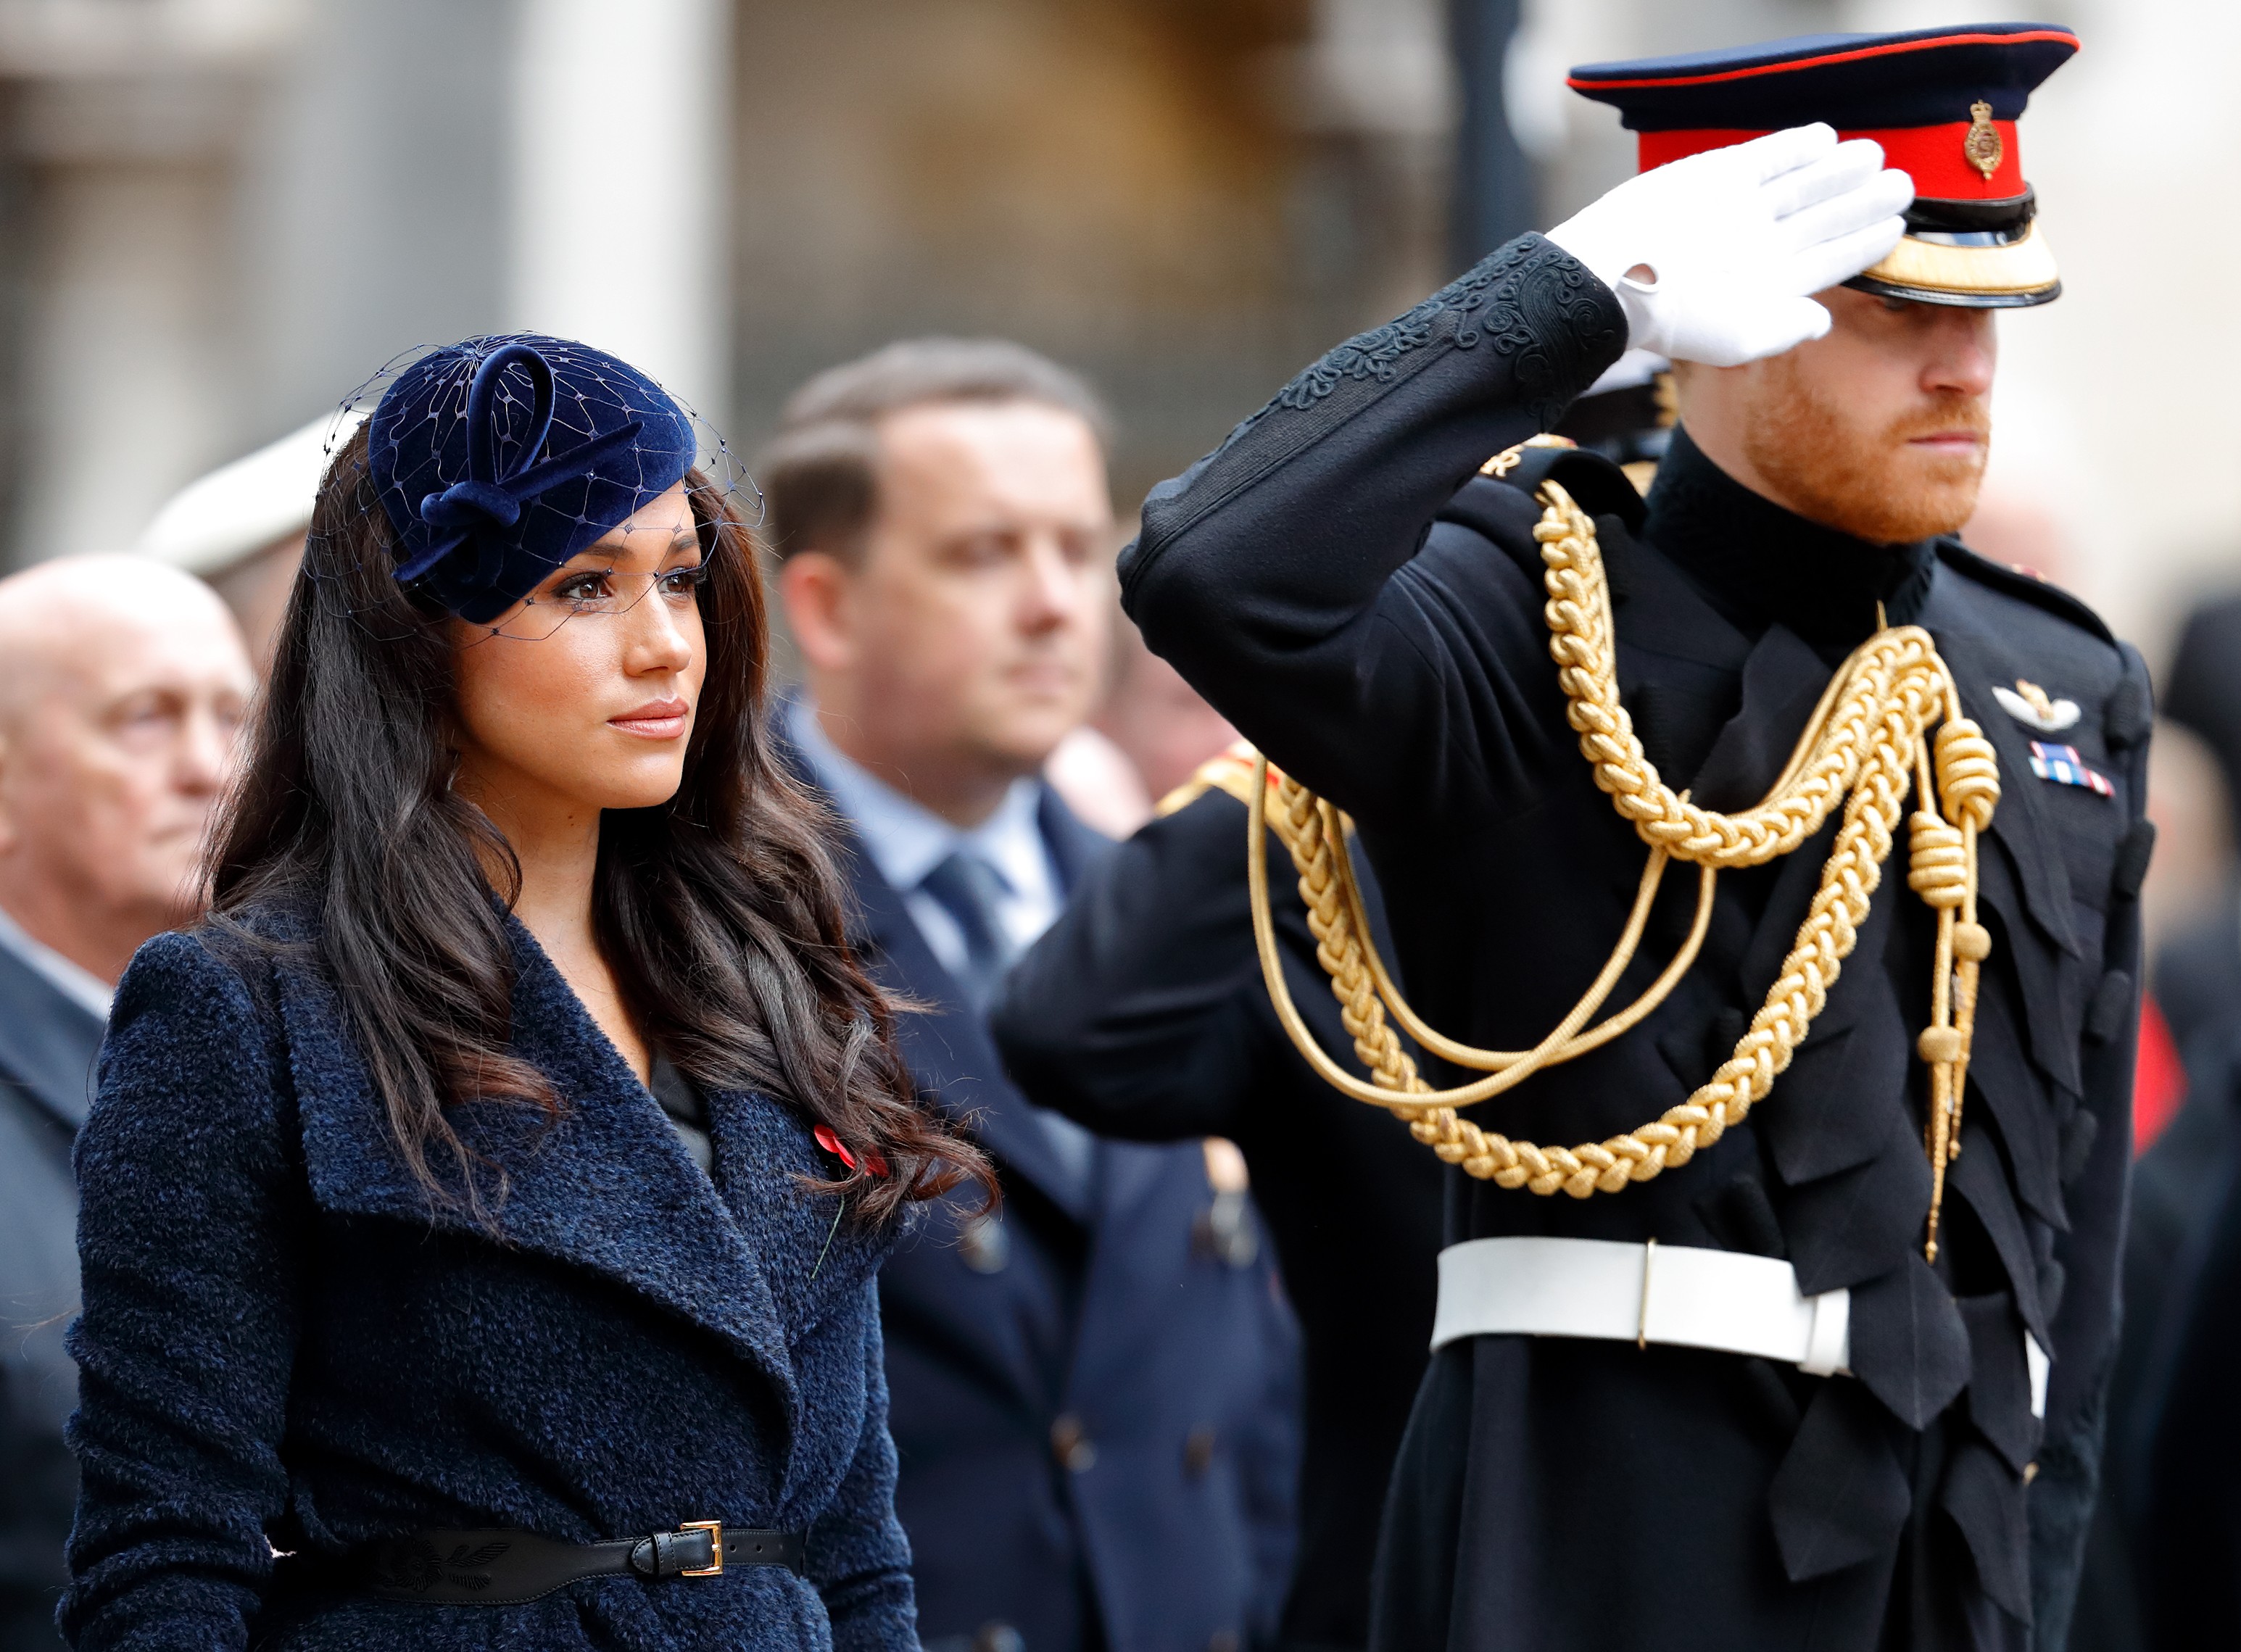 L'attrice Meghan e il principe Harry a una festa reale britannica privata nel novembre 2019 (Immagine: Getty Images)